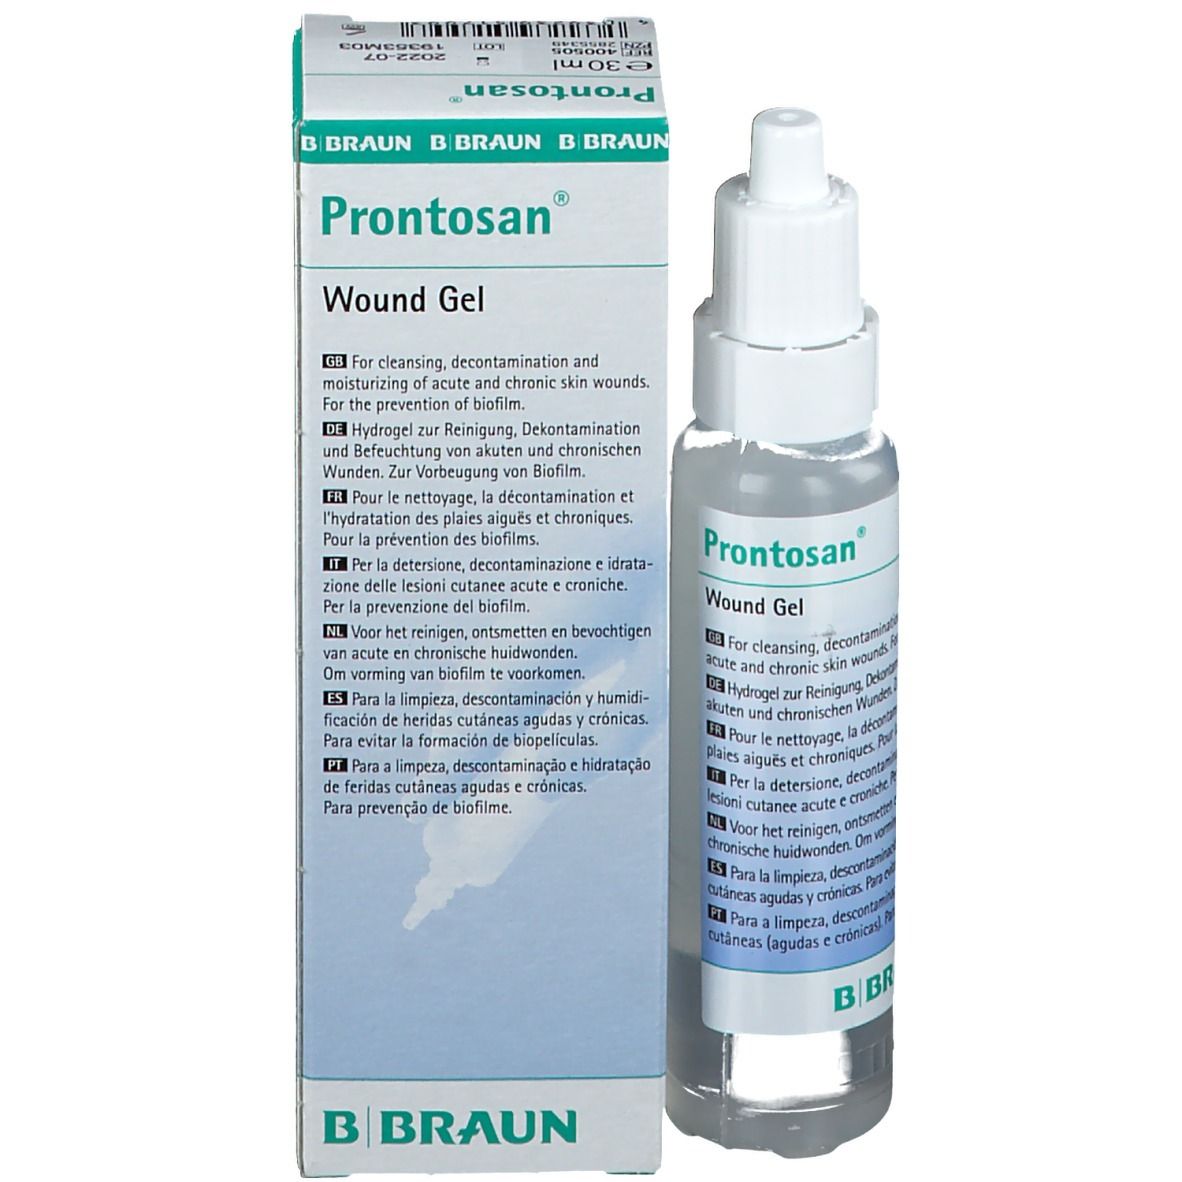 Prontosan® Wound Gel